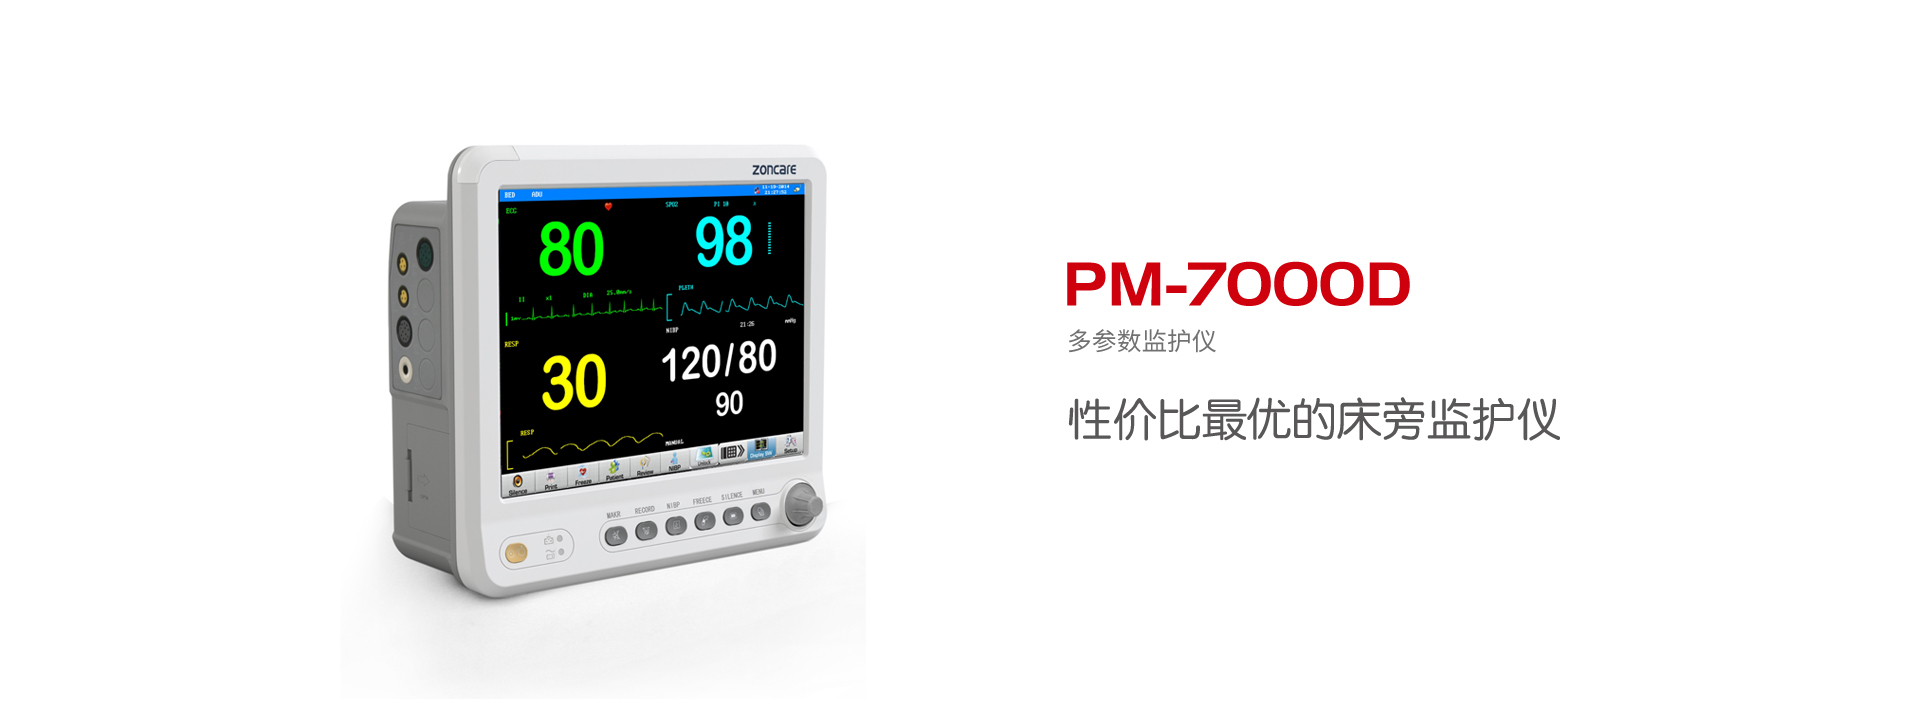 多参数监护仪PM-7000D标配